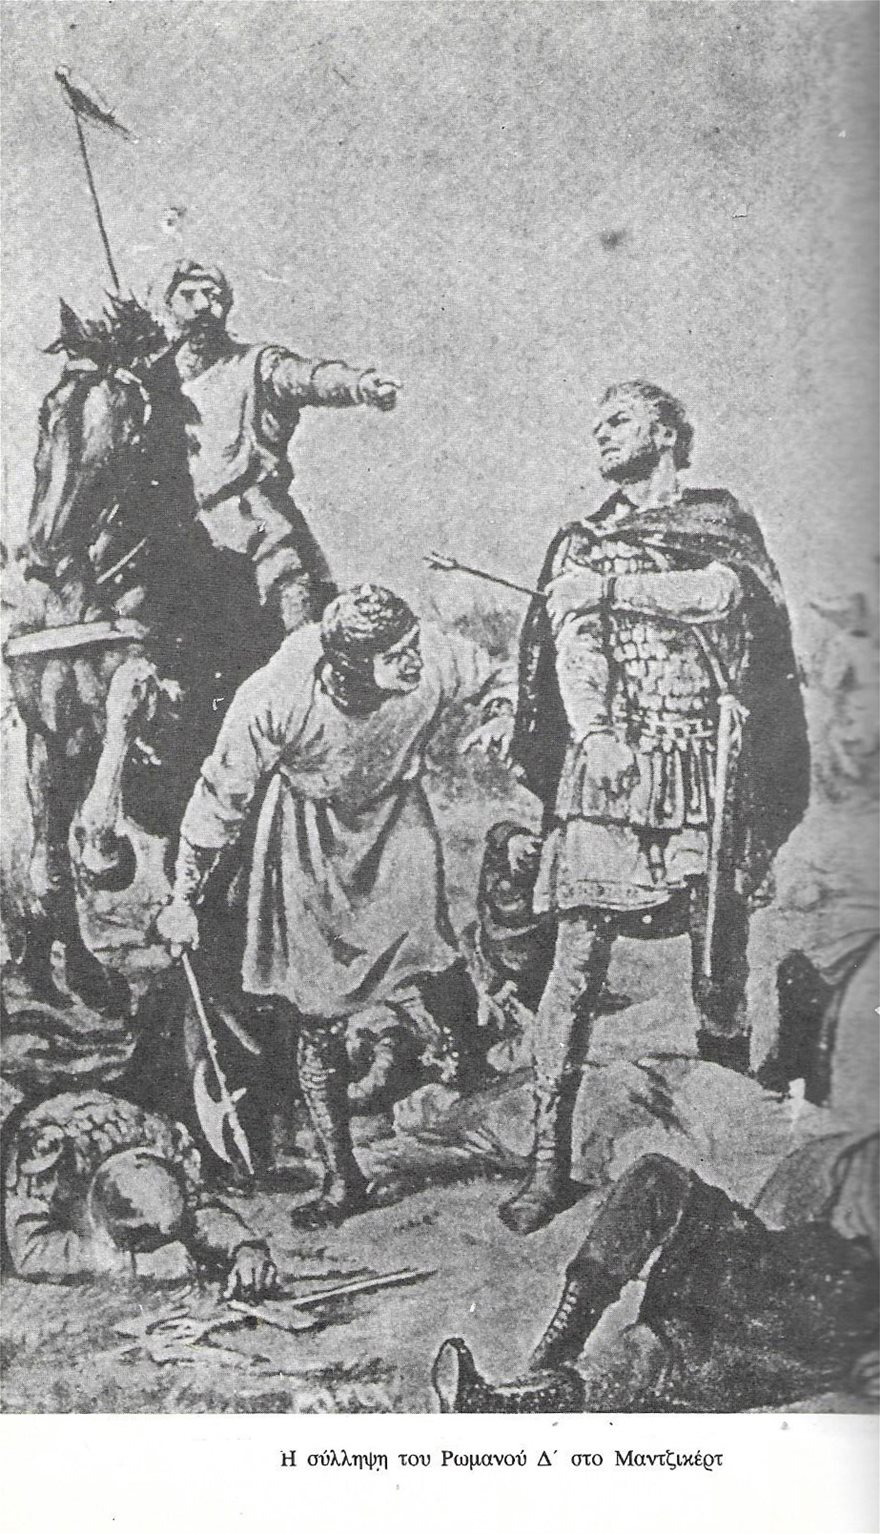 Η μάχη του Μαντζικέρτ (1071): Αιτίες και συνέπειες της ήττας των Βυζαντινών από τους Σελτζούκους - Φωτογραφία 8